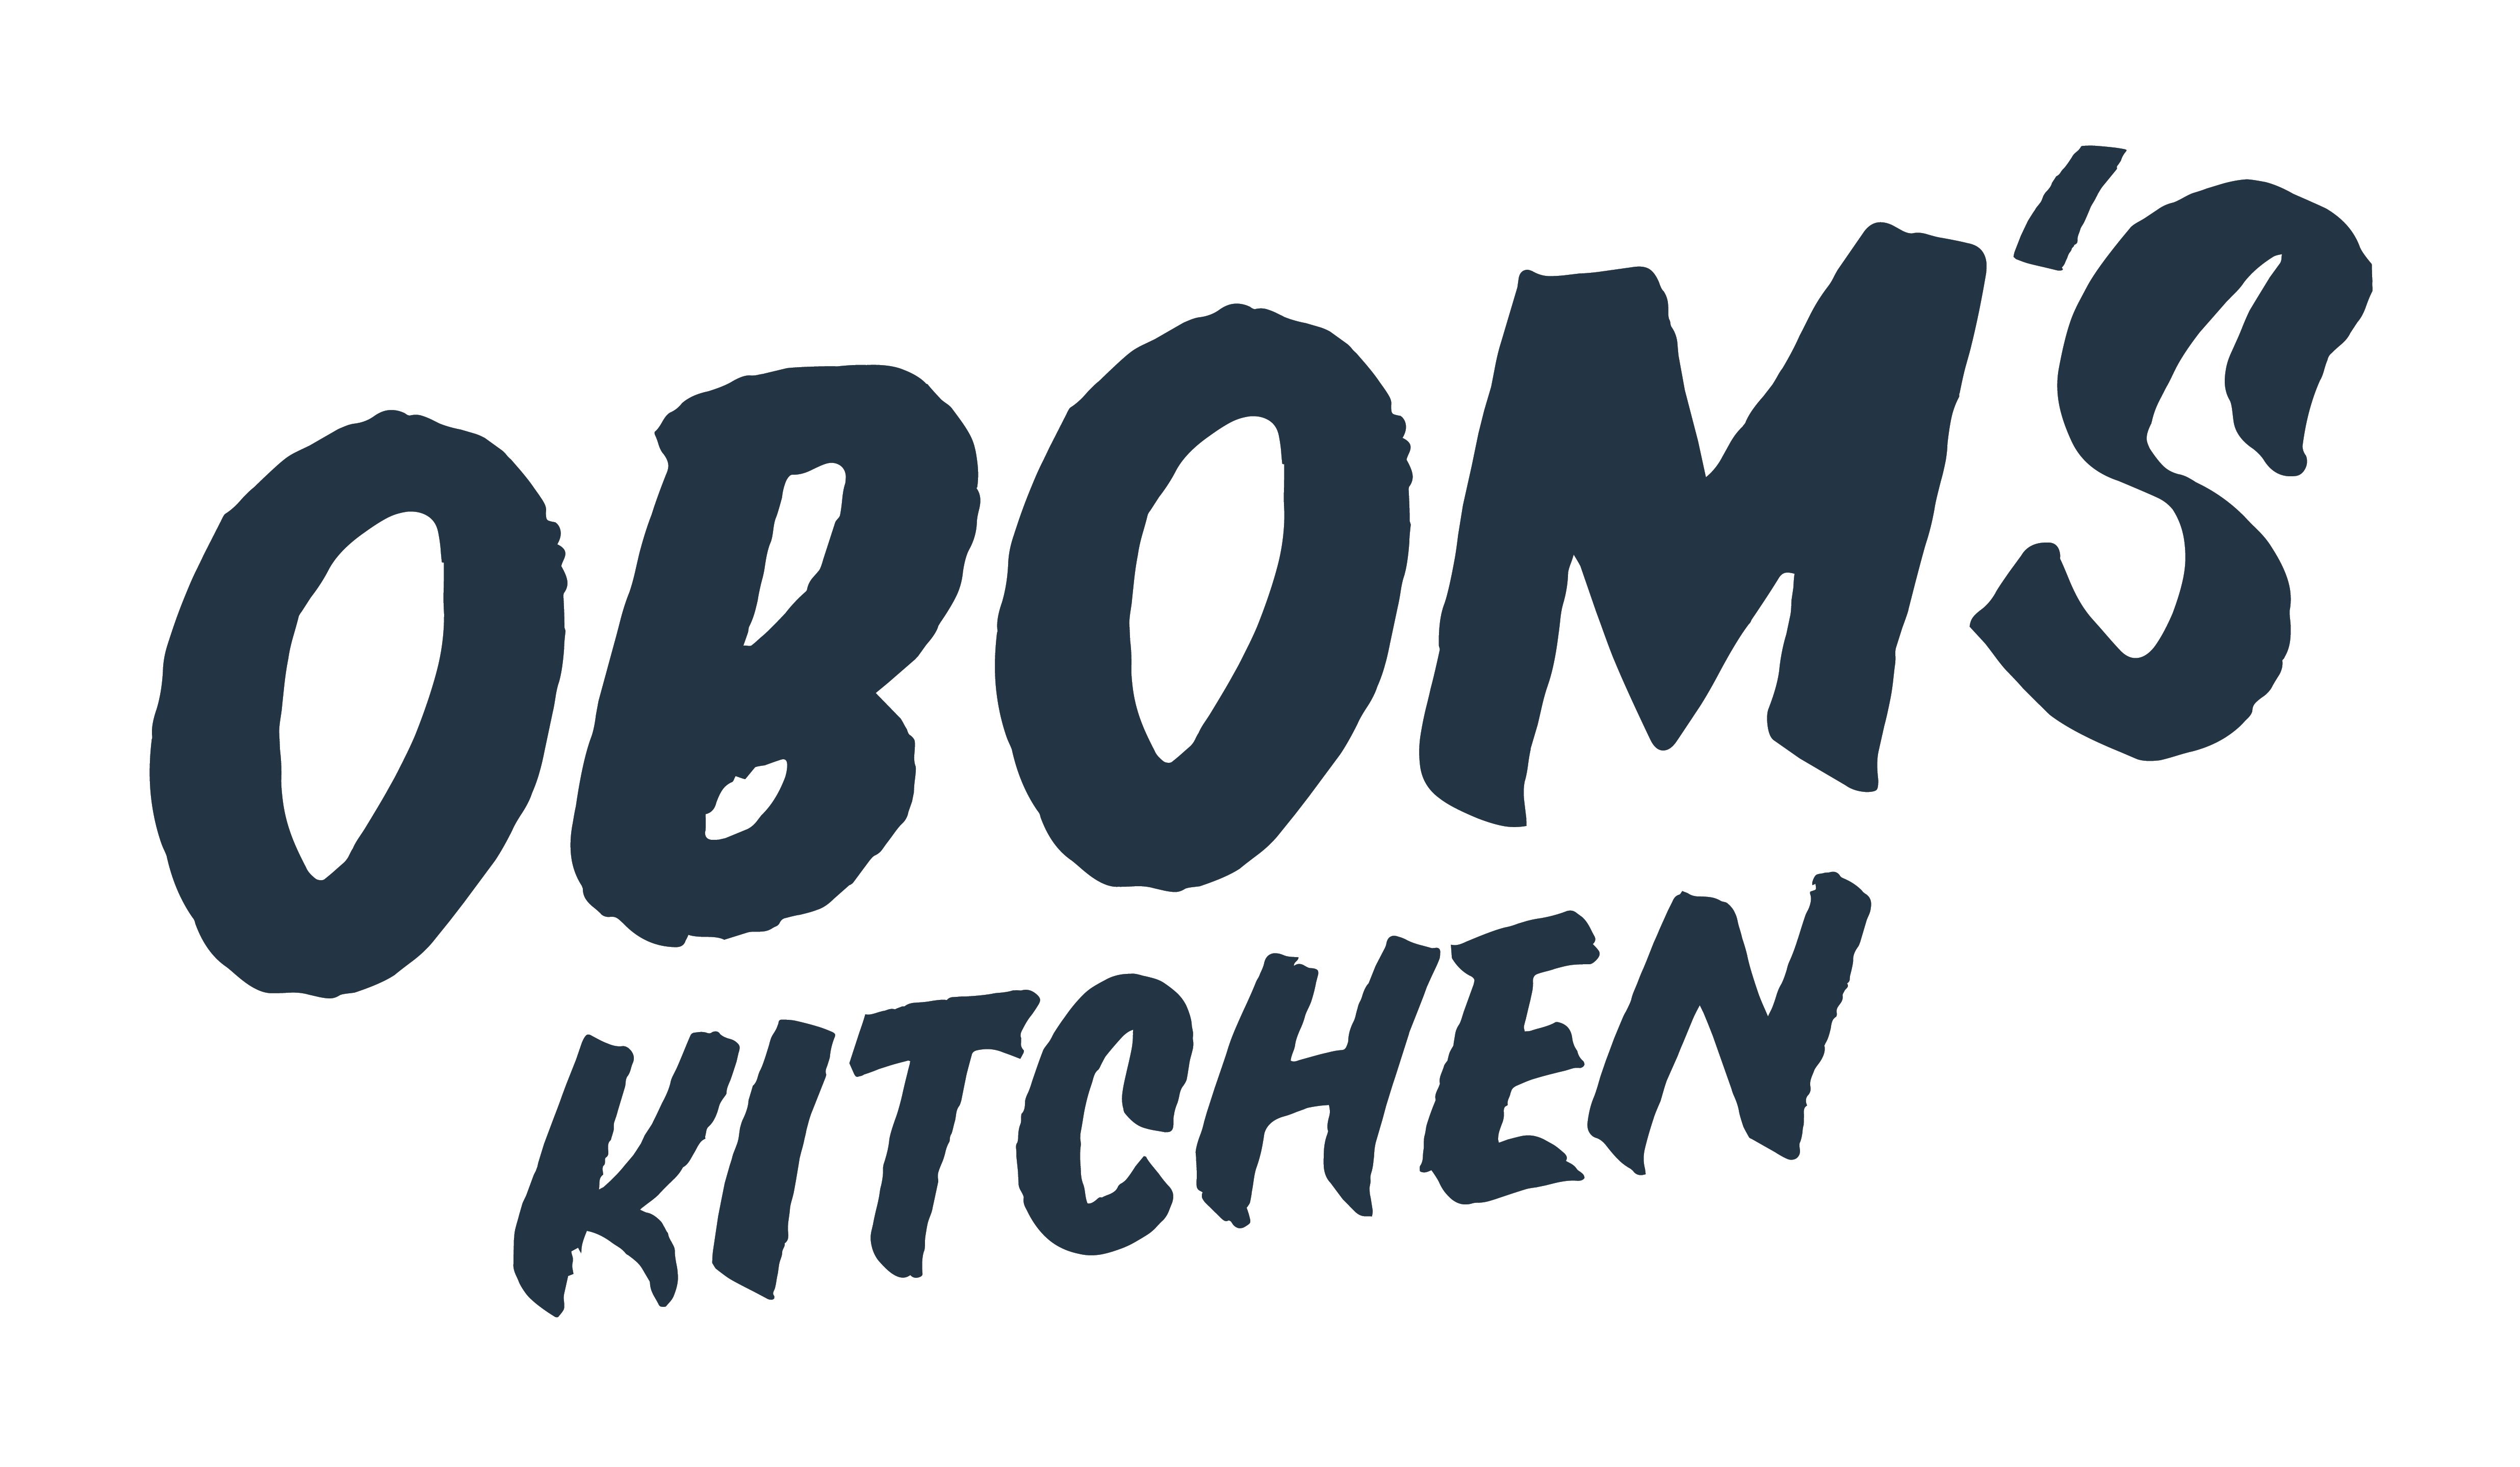 oboms kitchen